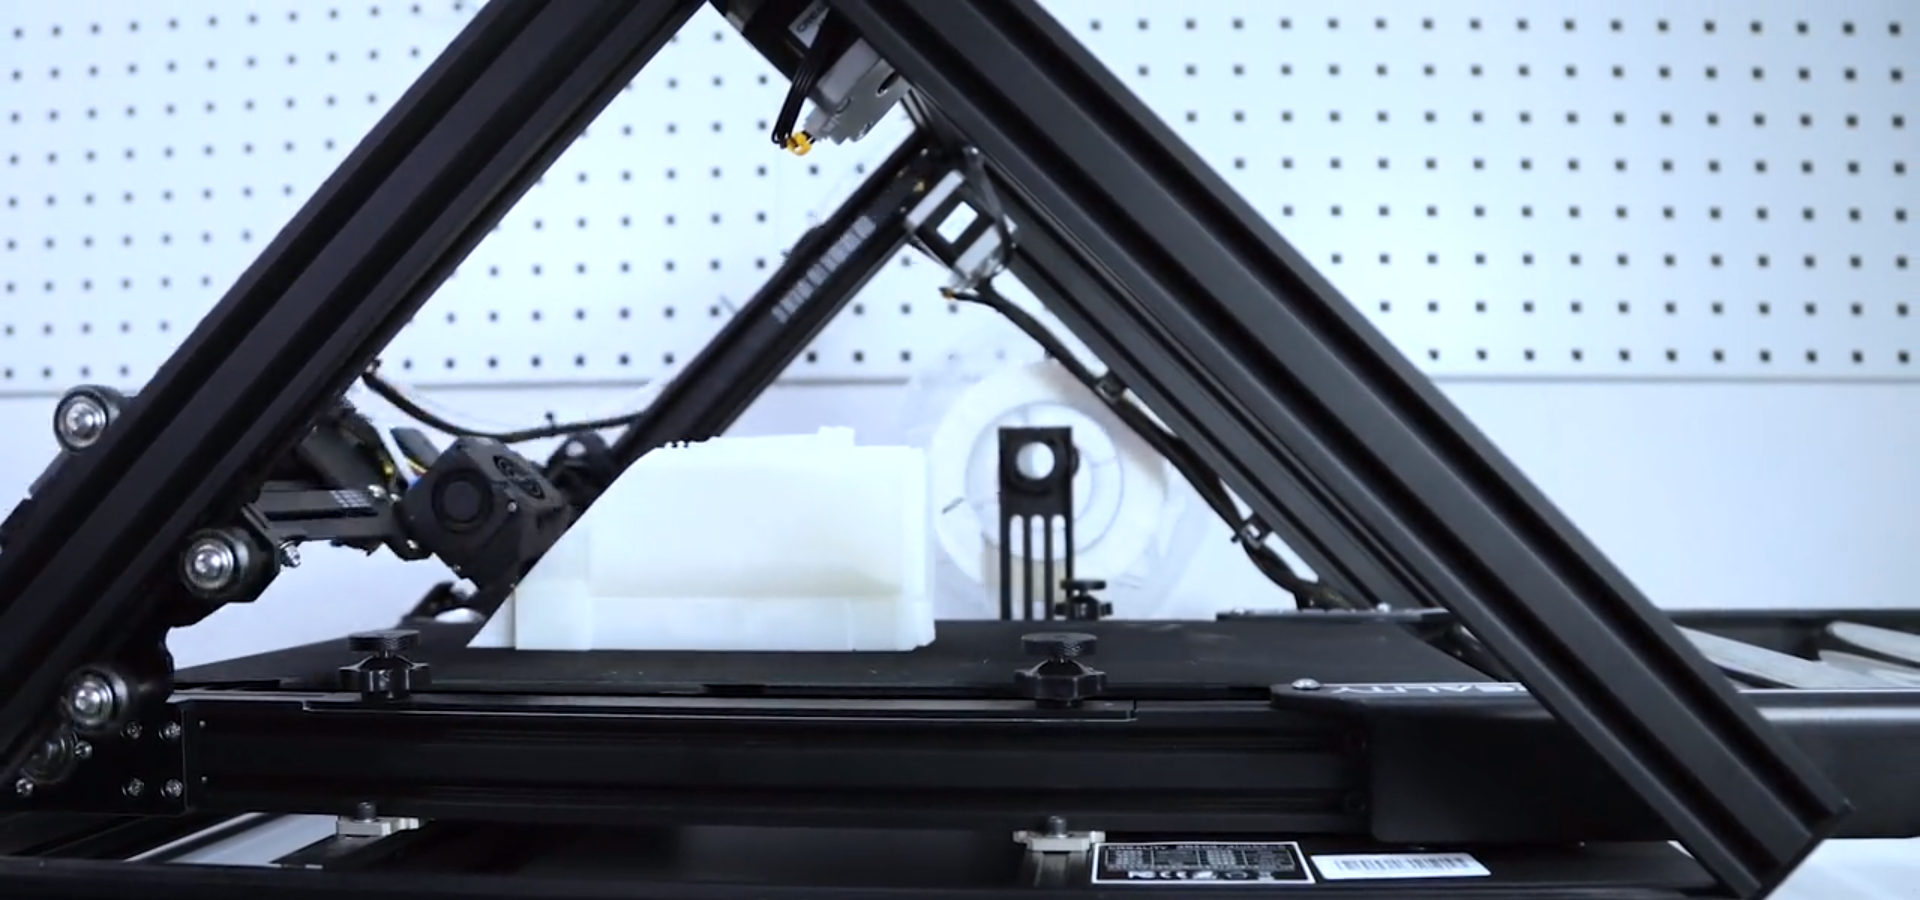 45 angle ILI - Questa stampante 3D può teoricamente stampare modelli infinitamente alti